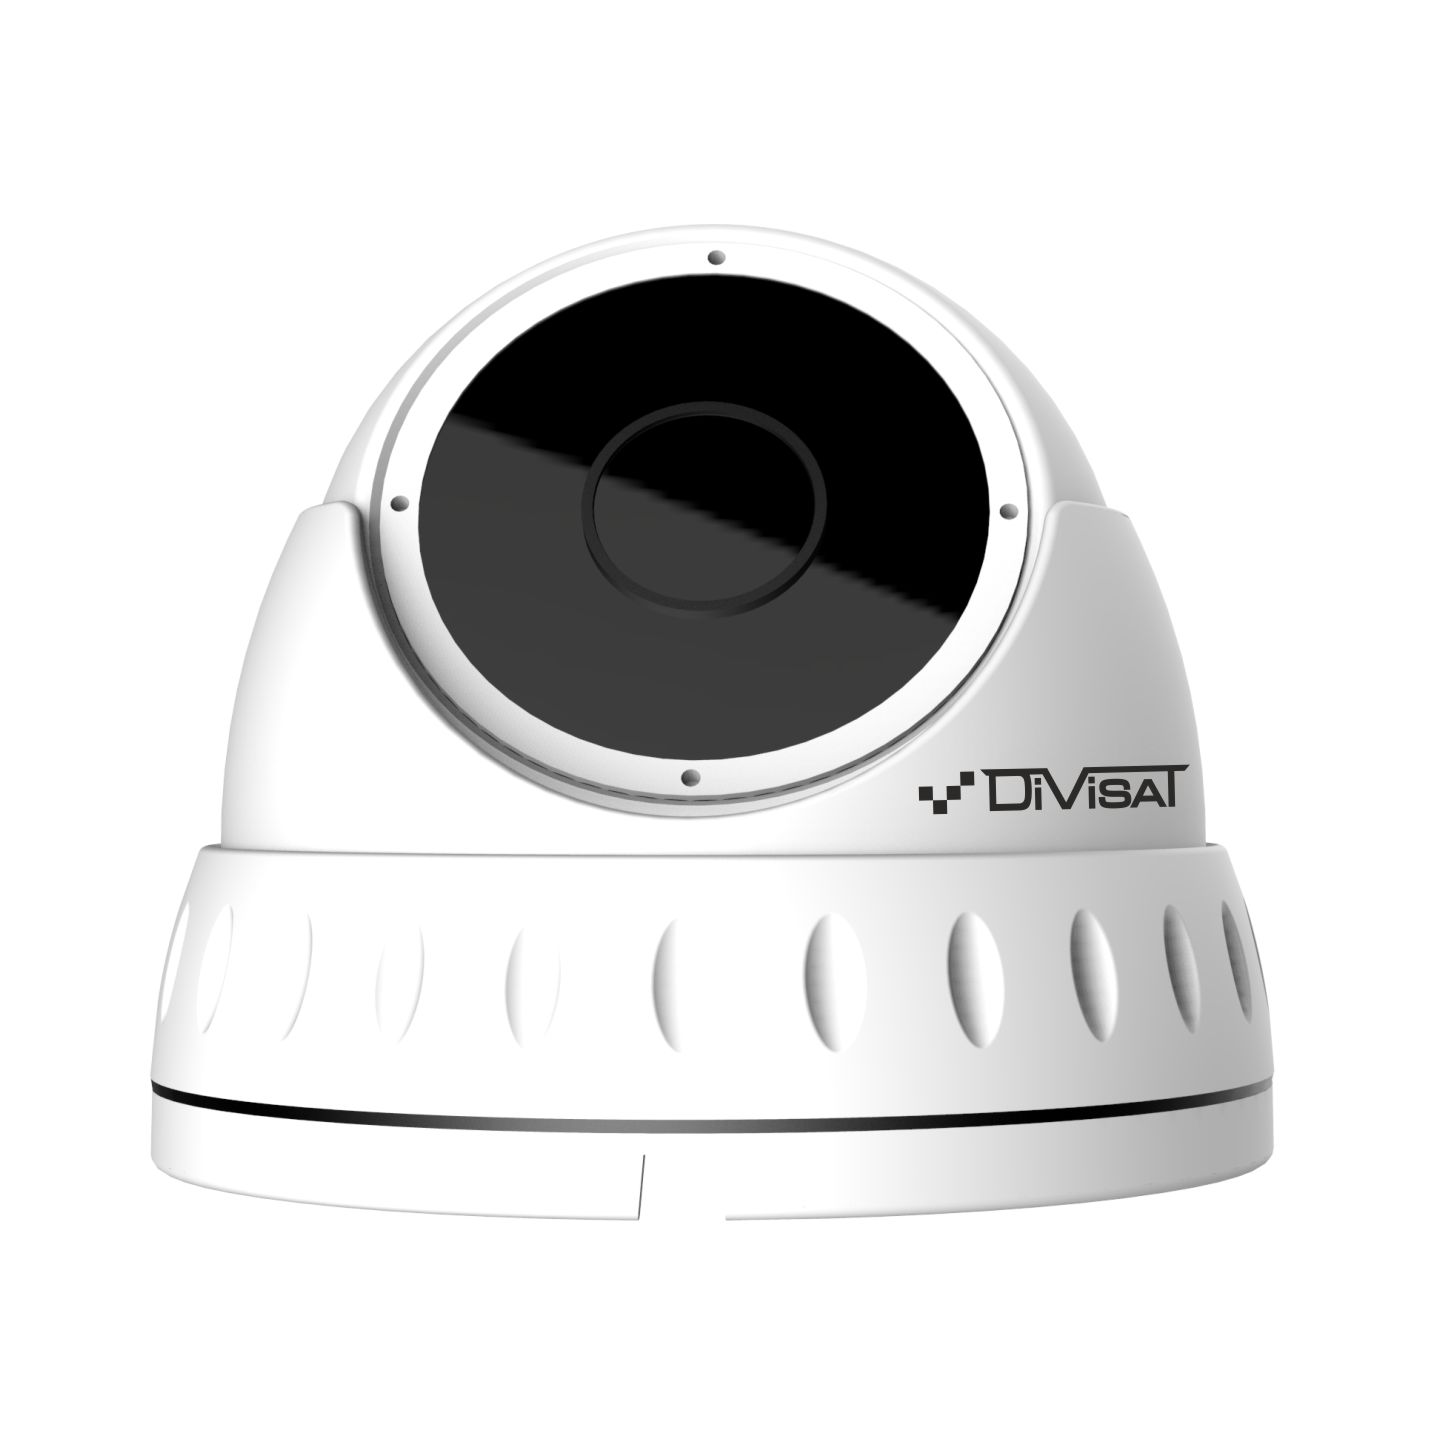 DVI-D221 ver.2.0 2.8 (2Mpix, ИК до 20м) антивандальная купольная IP камера системы видеонаблюдения DiviSat